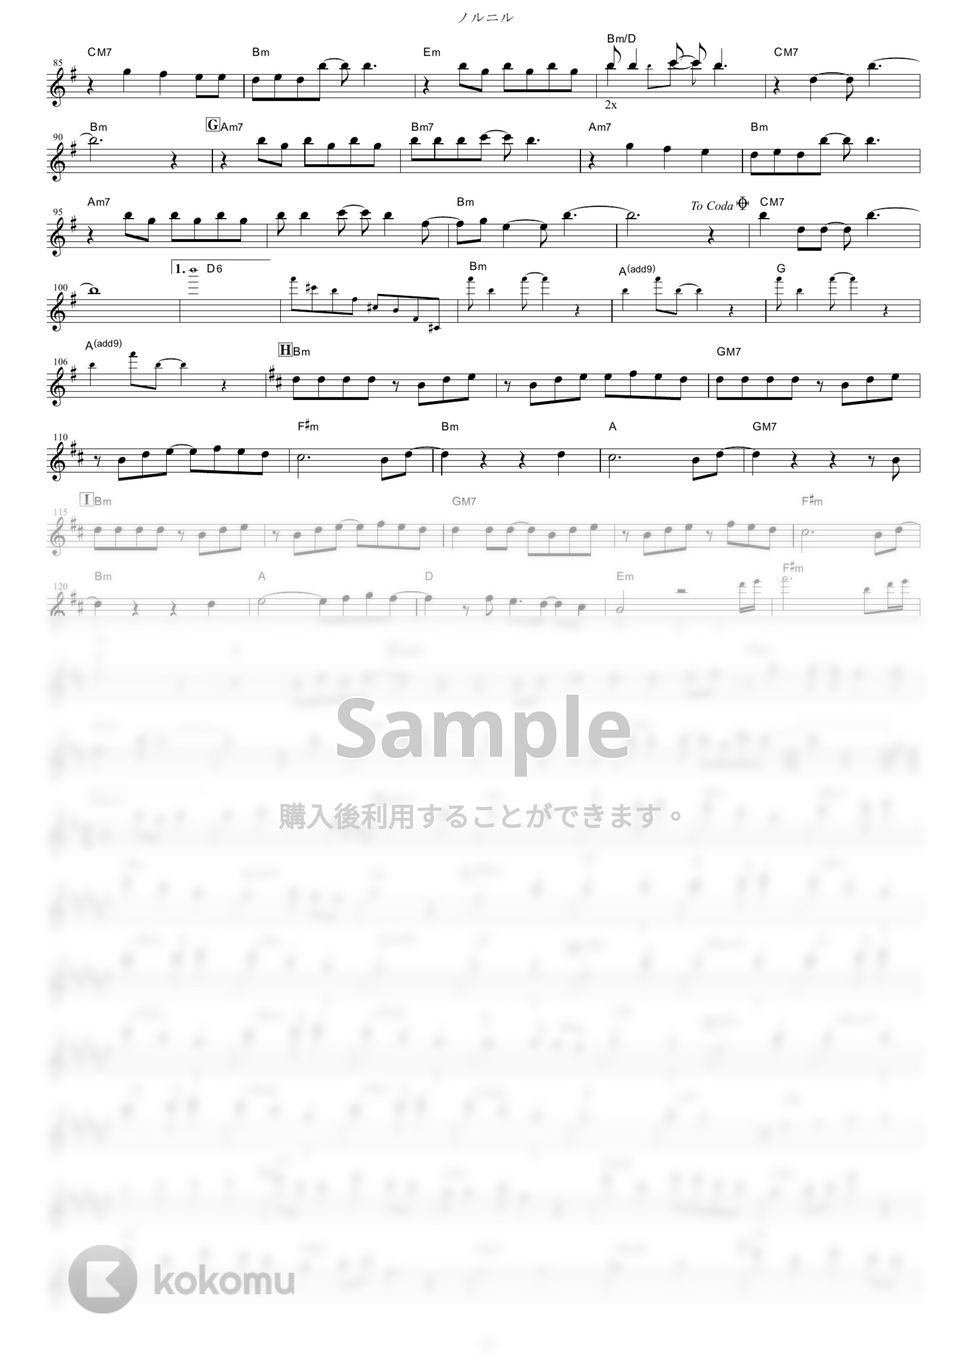 やくしまるえつこメトロオーケストラ - ノルニル (『輪るピングドラム』 / in Bb) by muta-sax